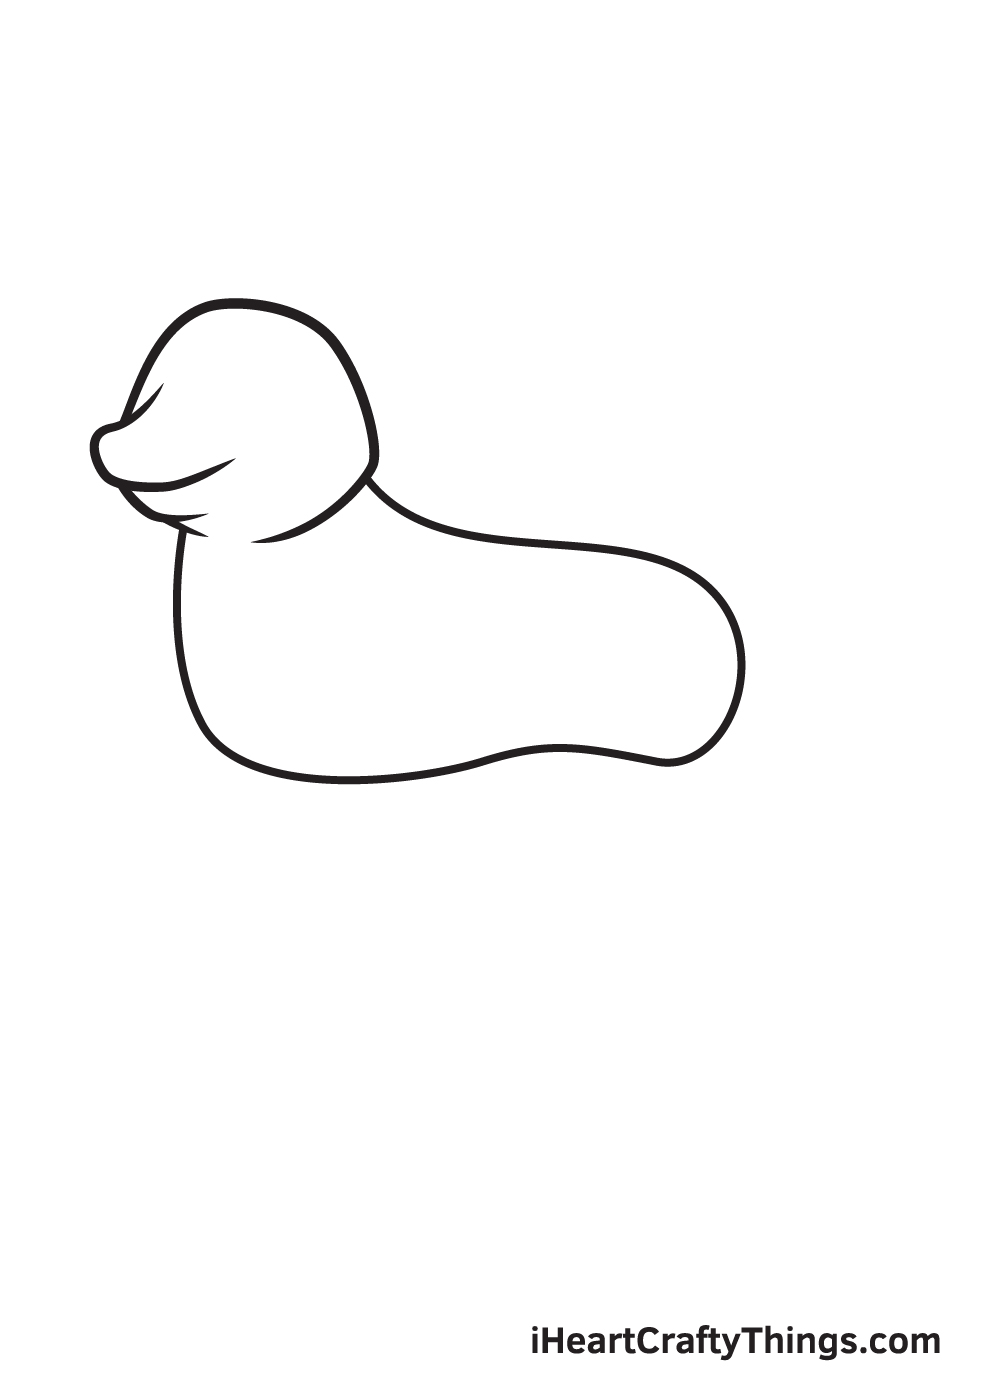 Husky DRAWING – STEP 3 - Cách vẽ con chó đơn giản với 8 bước cơ bản có hướng dẫn chi tiết